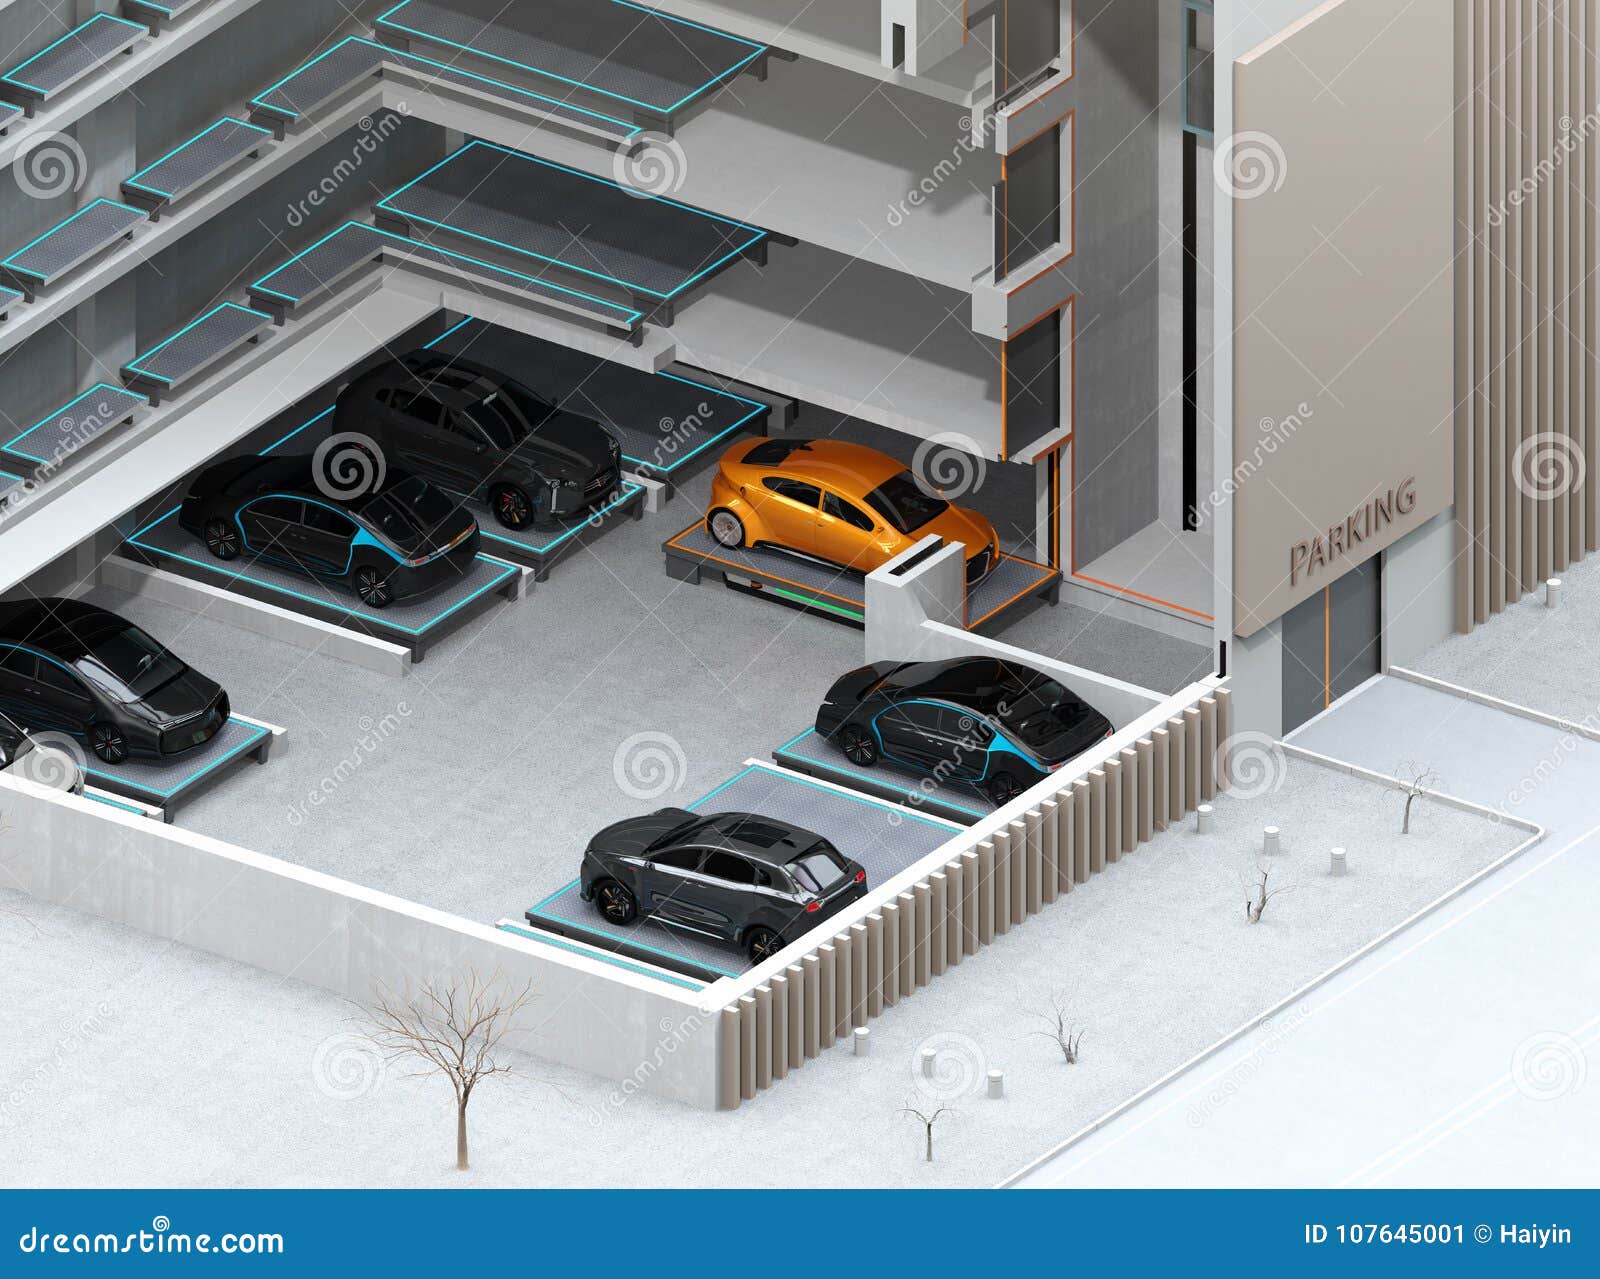 Car Parking 3d Model Free Download